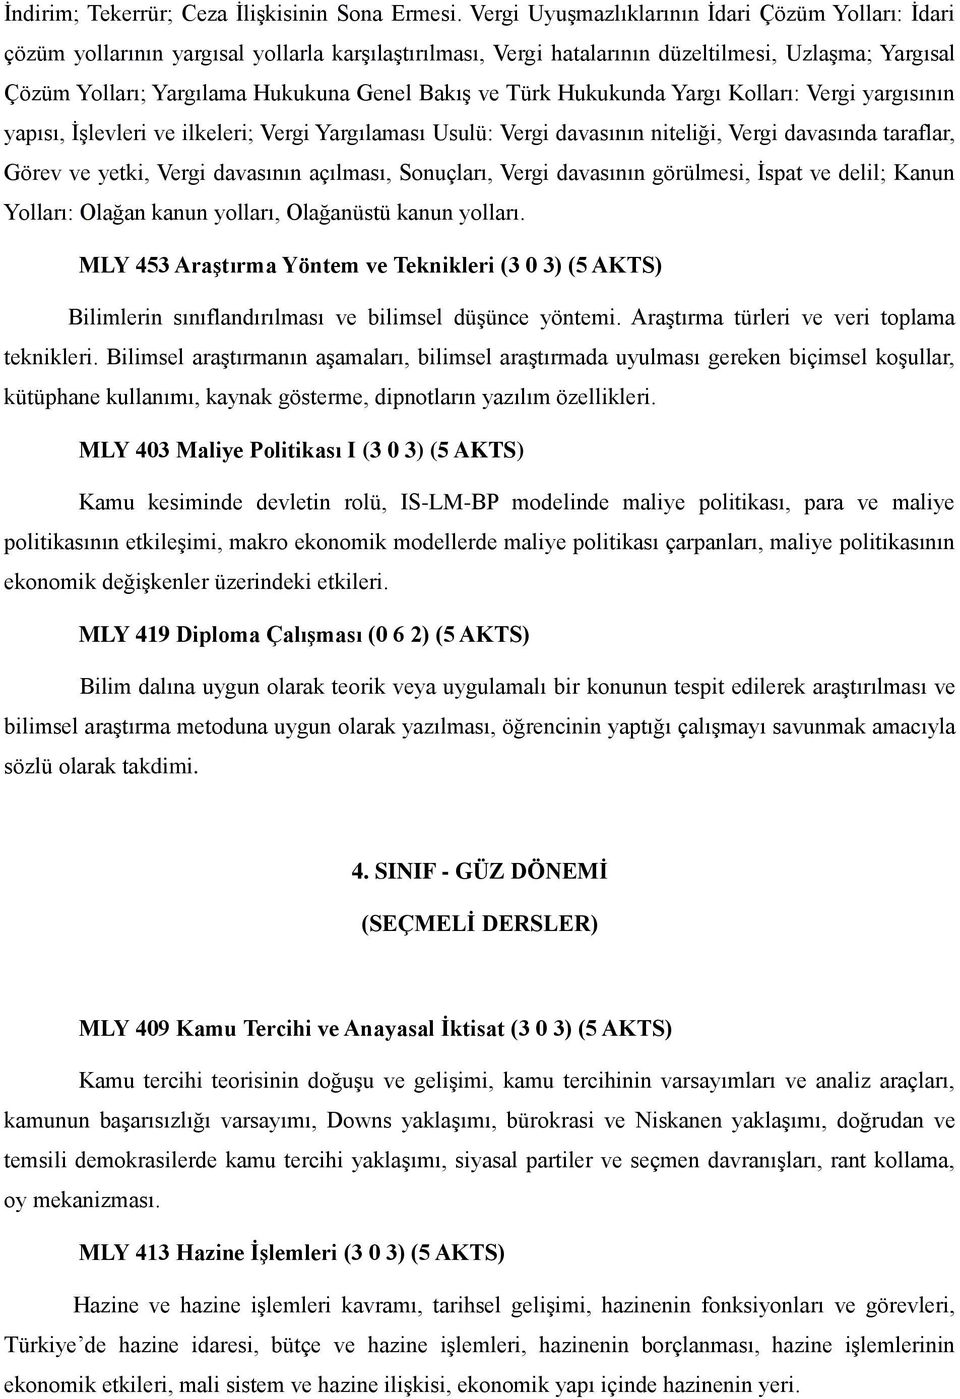 Bakış ve Türk Hukukunda Yargı Kolları: Vergi yargısının yapısı, İşlevleri ve ilkeleri; Vergi Yargılaması Usulü: Vergi davasının niteliği, Vergi davasında taraflar, Görev ve yetki, Vergi davasının